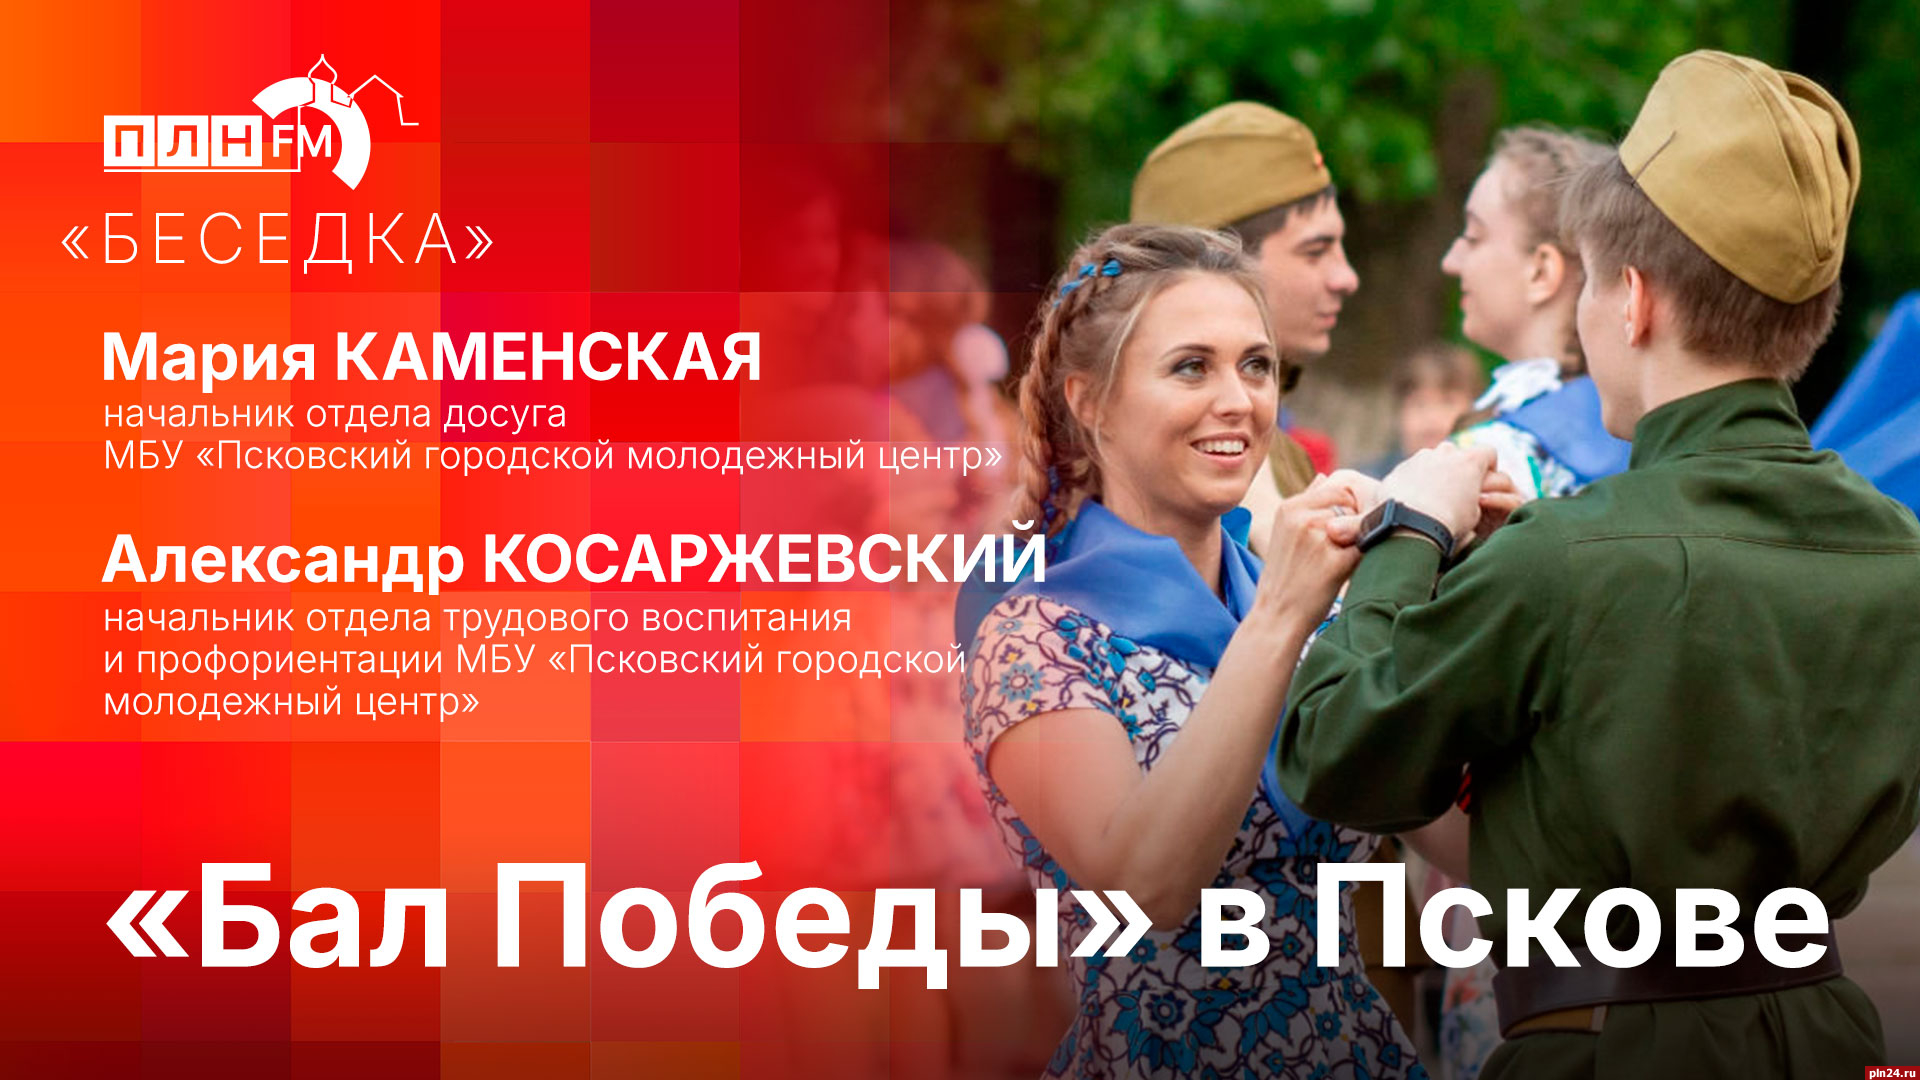 Начинается видеотрансляция программы «Беседка»: «Бал Победы» в Пскове